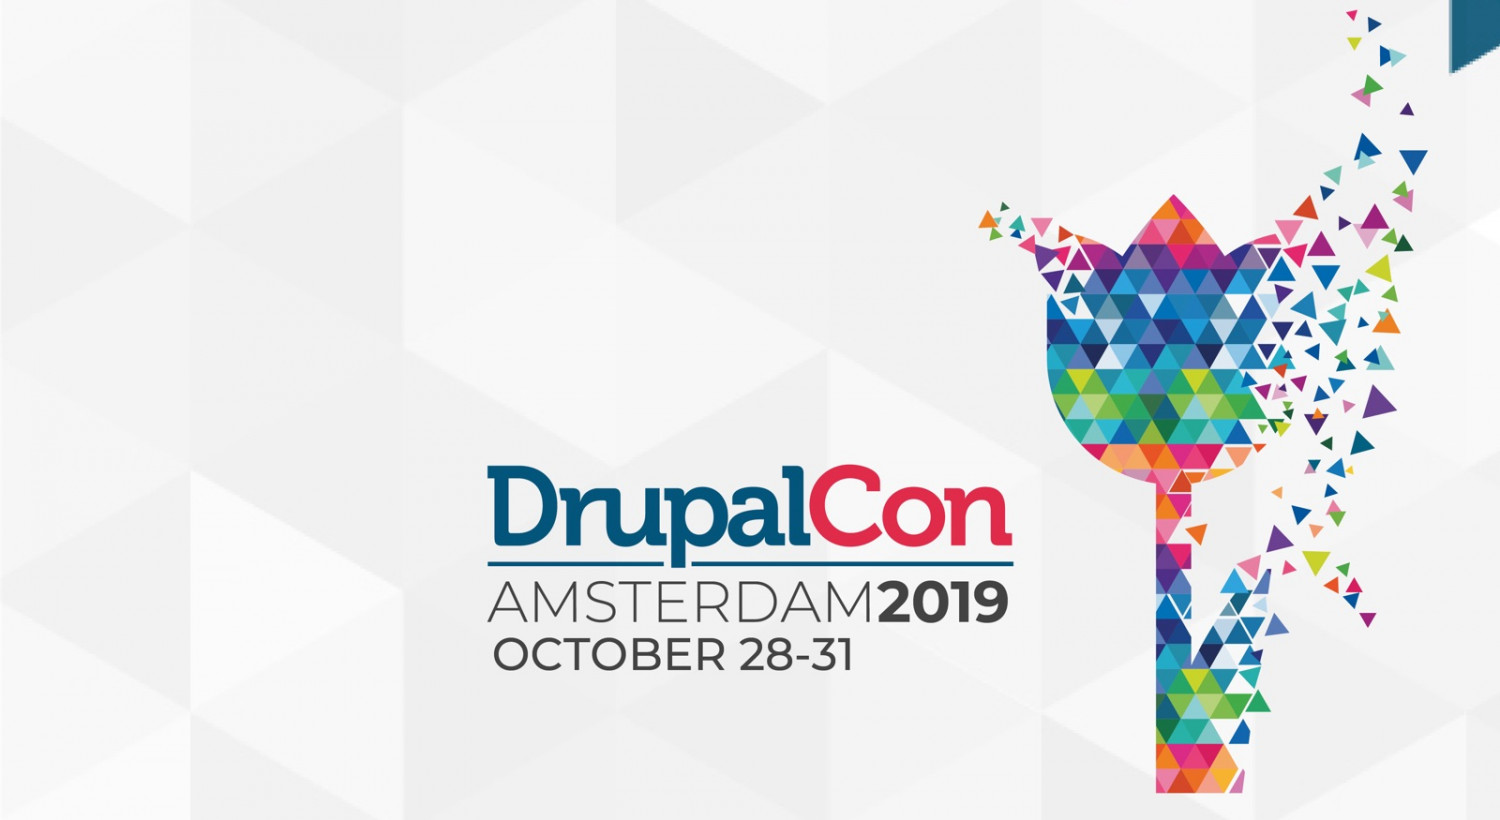 DrupalCon social flyer